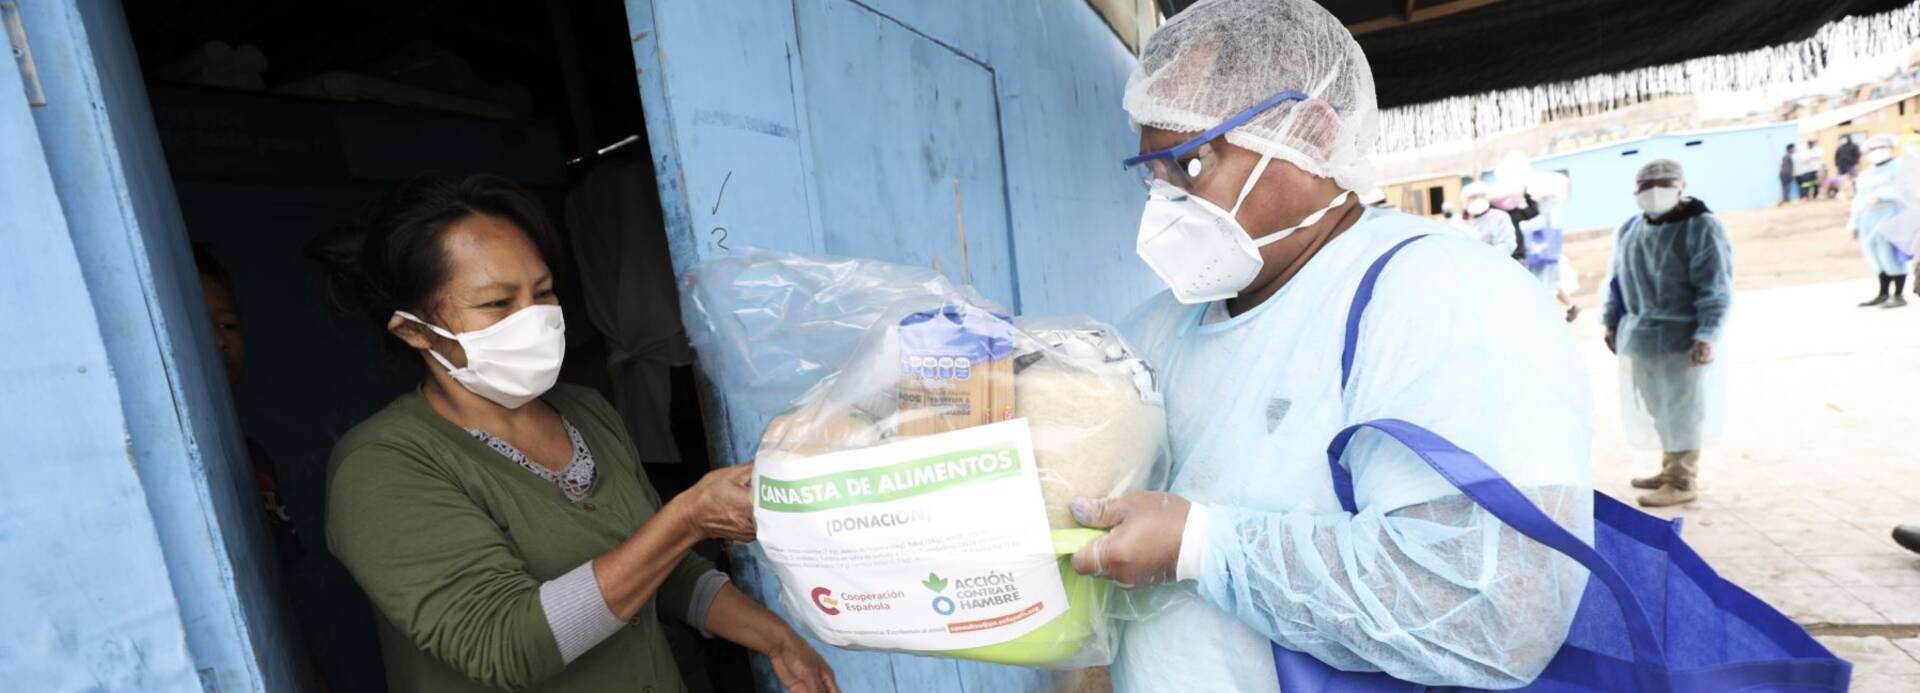 Mitarbeiter von Aktion gegen den Hunger übergibt Lebensmittelpaket.